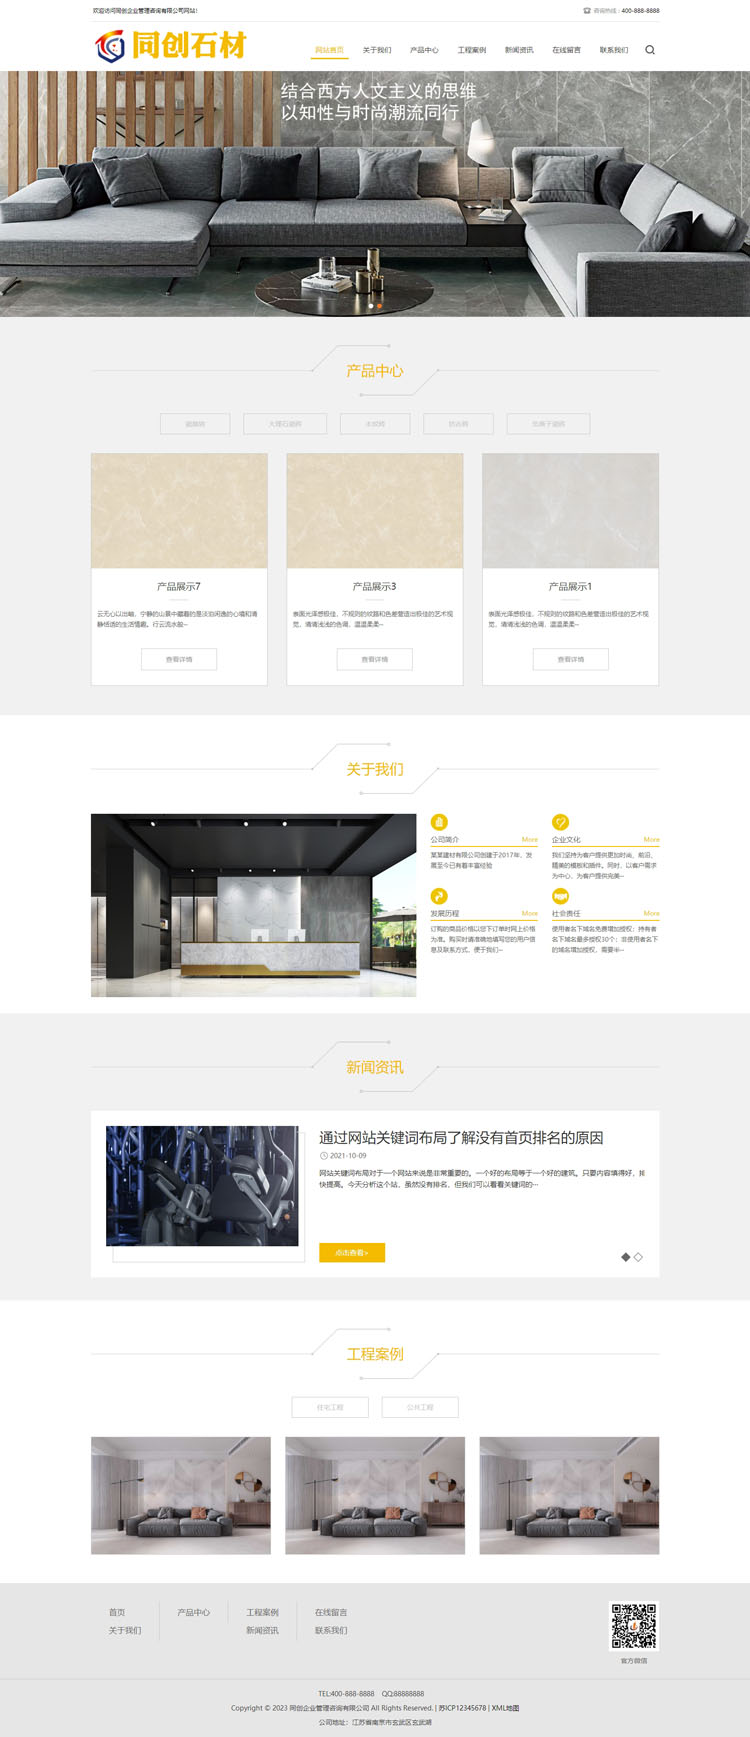 响应式瓷砖大理石建材网站制作程序模板-XX231-2